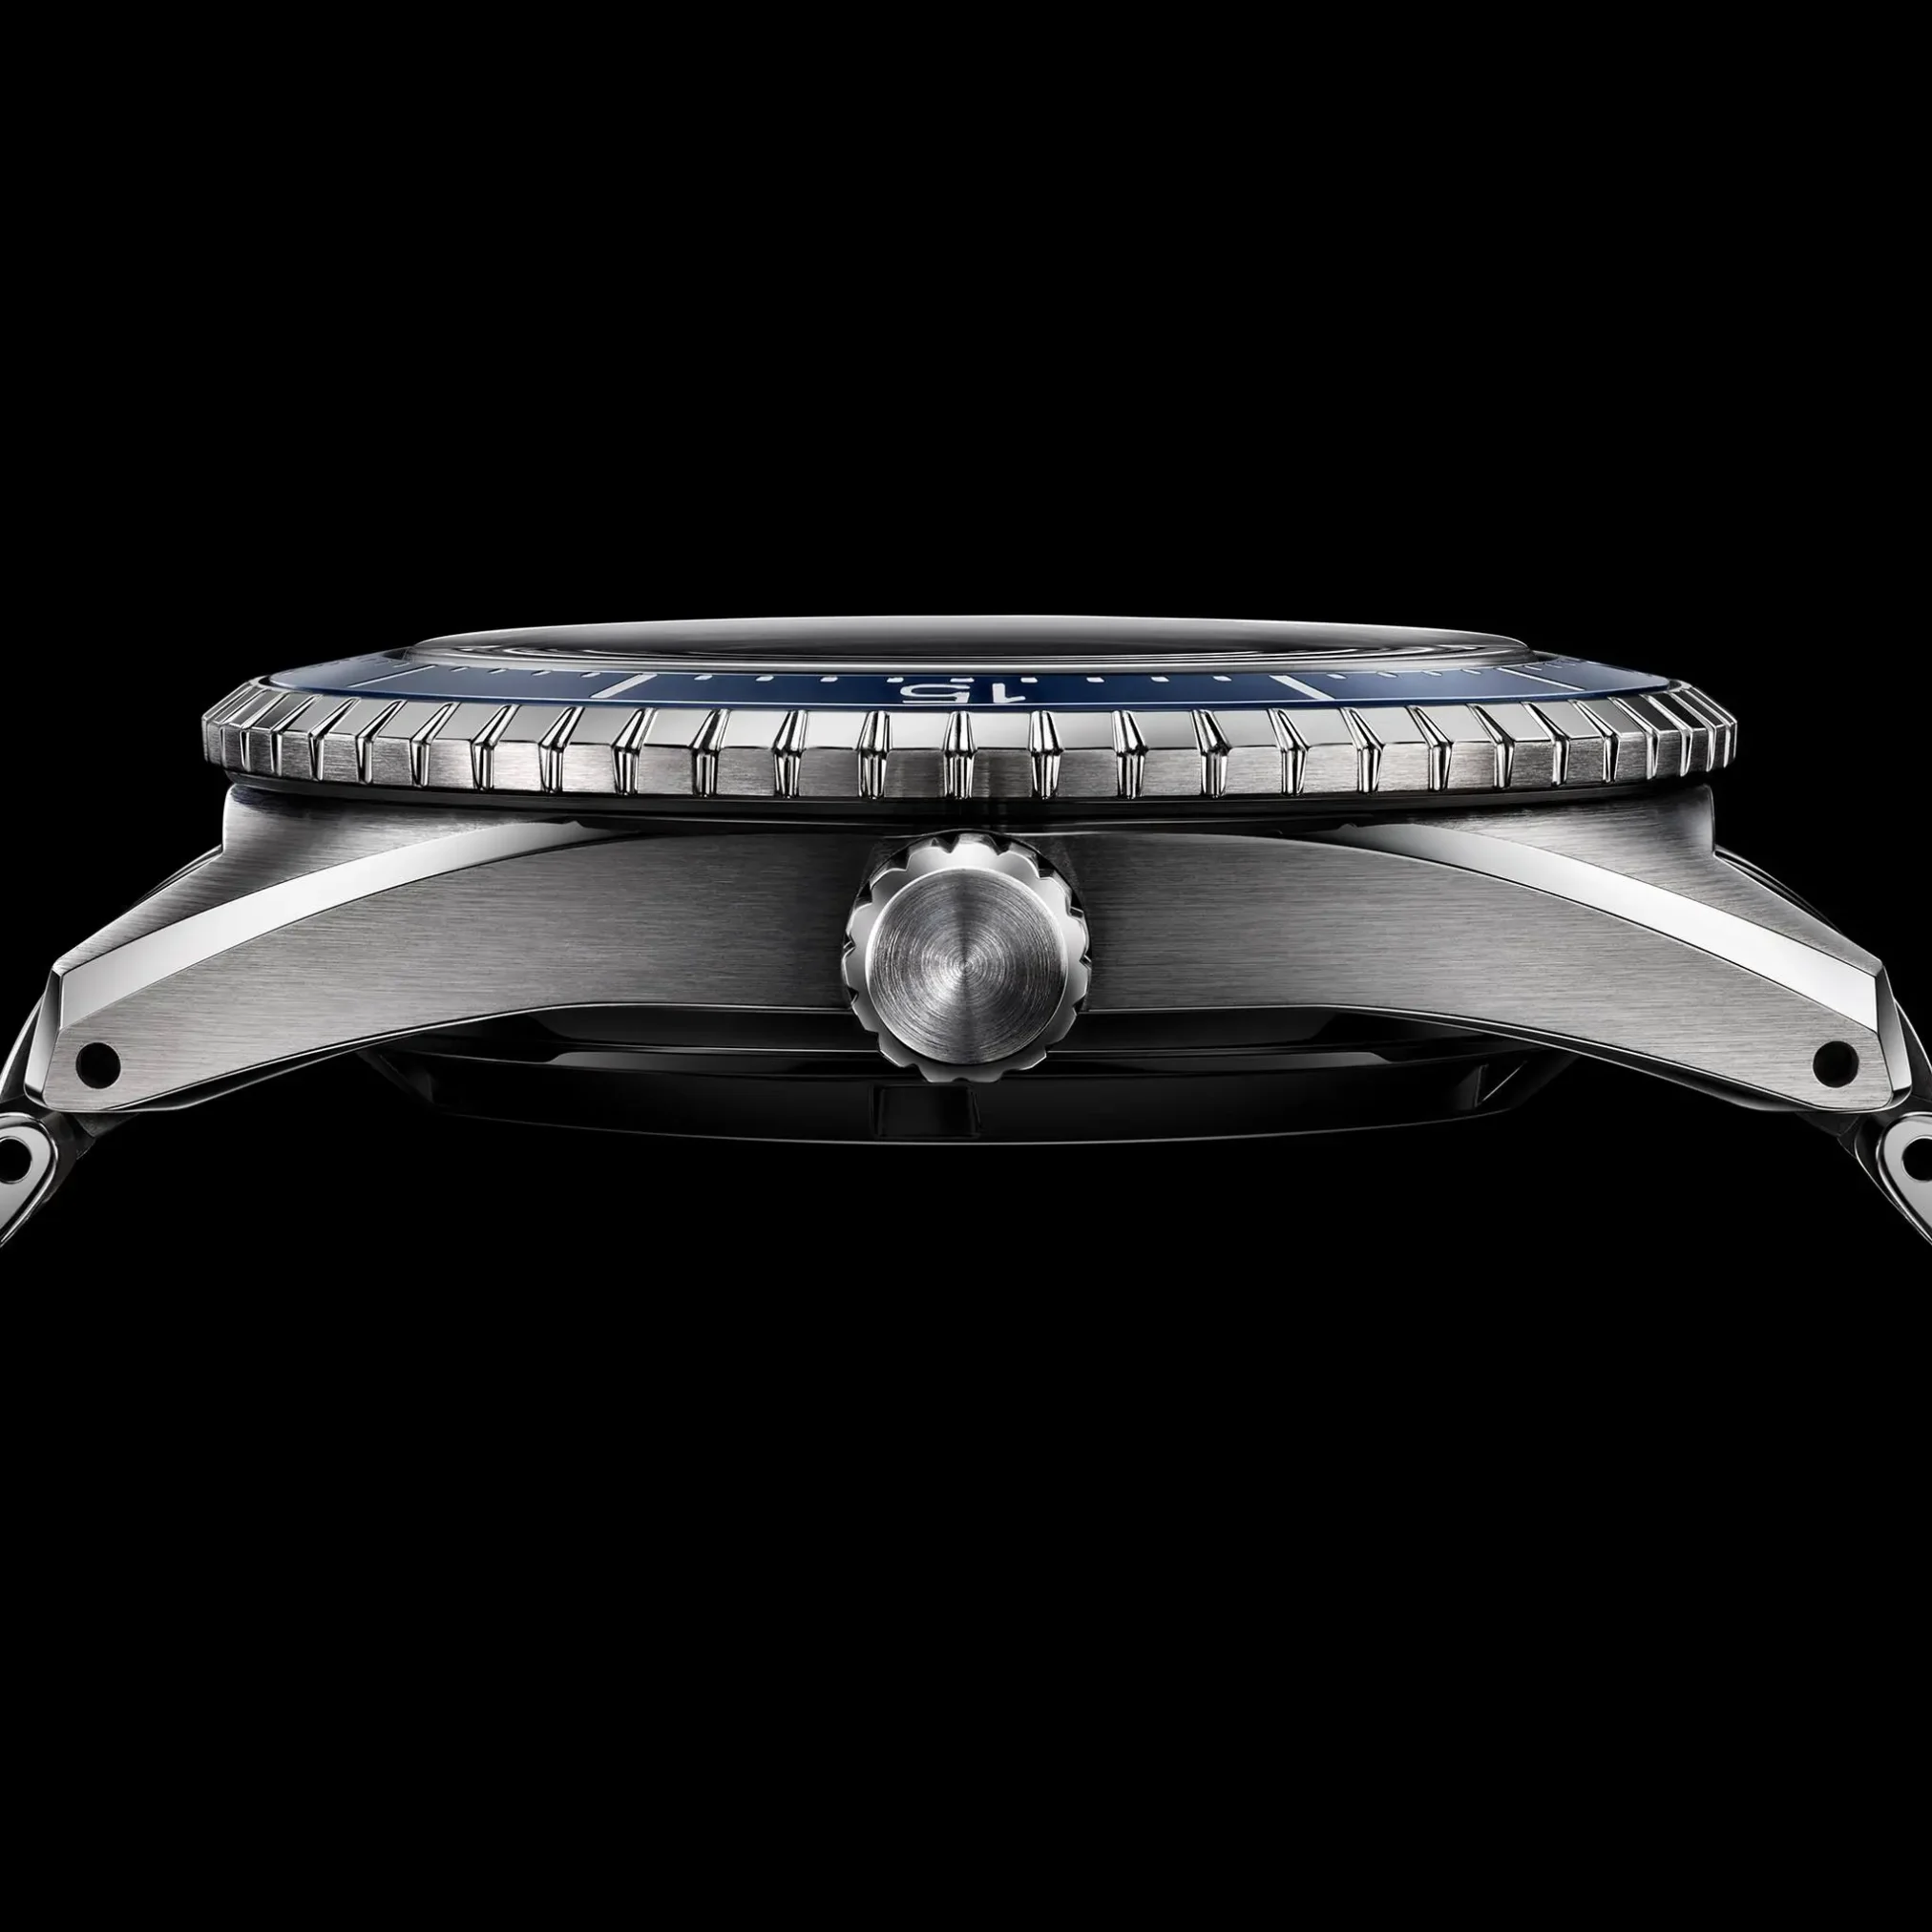 Đồng hồ Seiko Prospex Marinemaster Limited Edition SBEN007 (SJE099) mặt số màu xanh. Dây đeo bằng thép. Thân vỏ bằng thép.